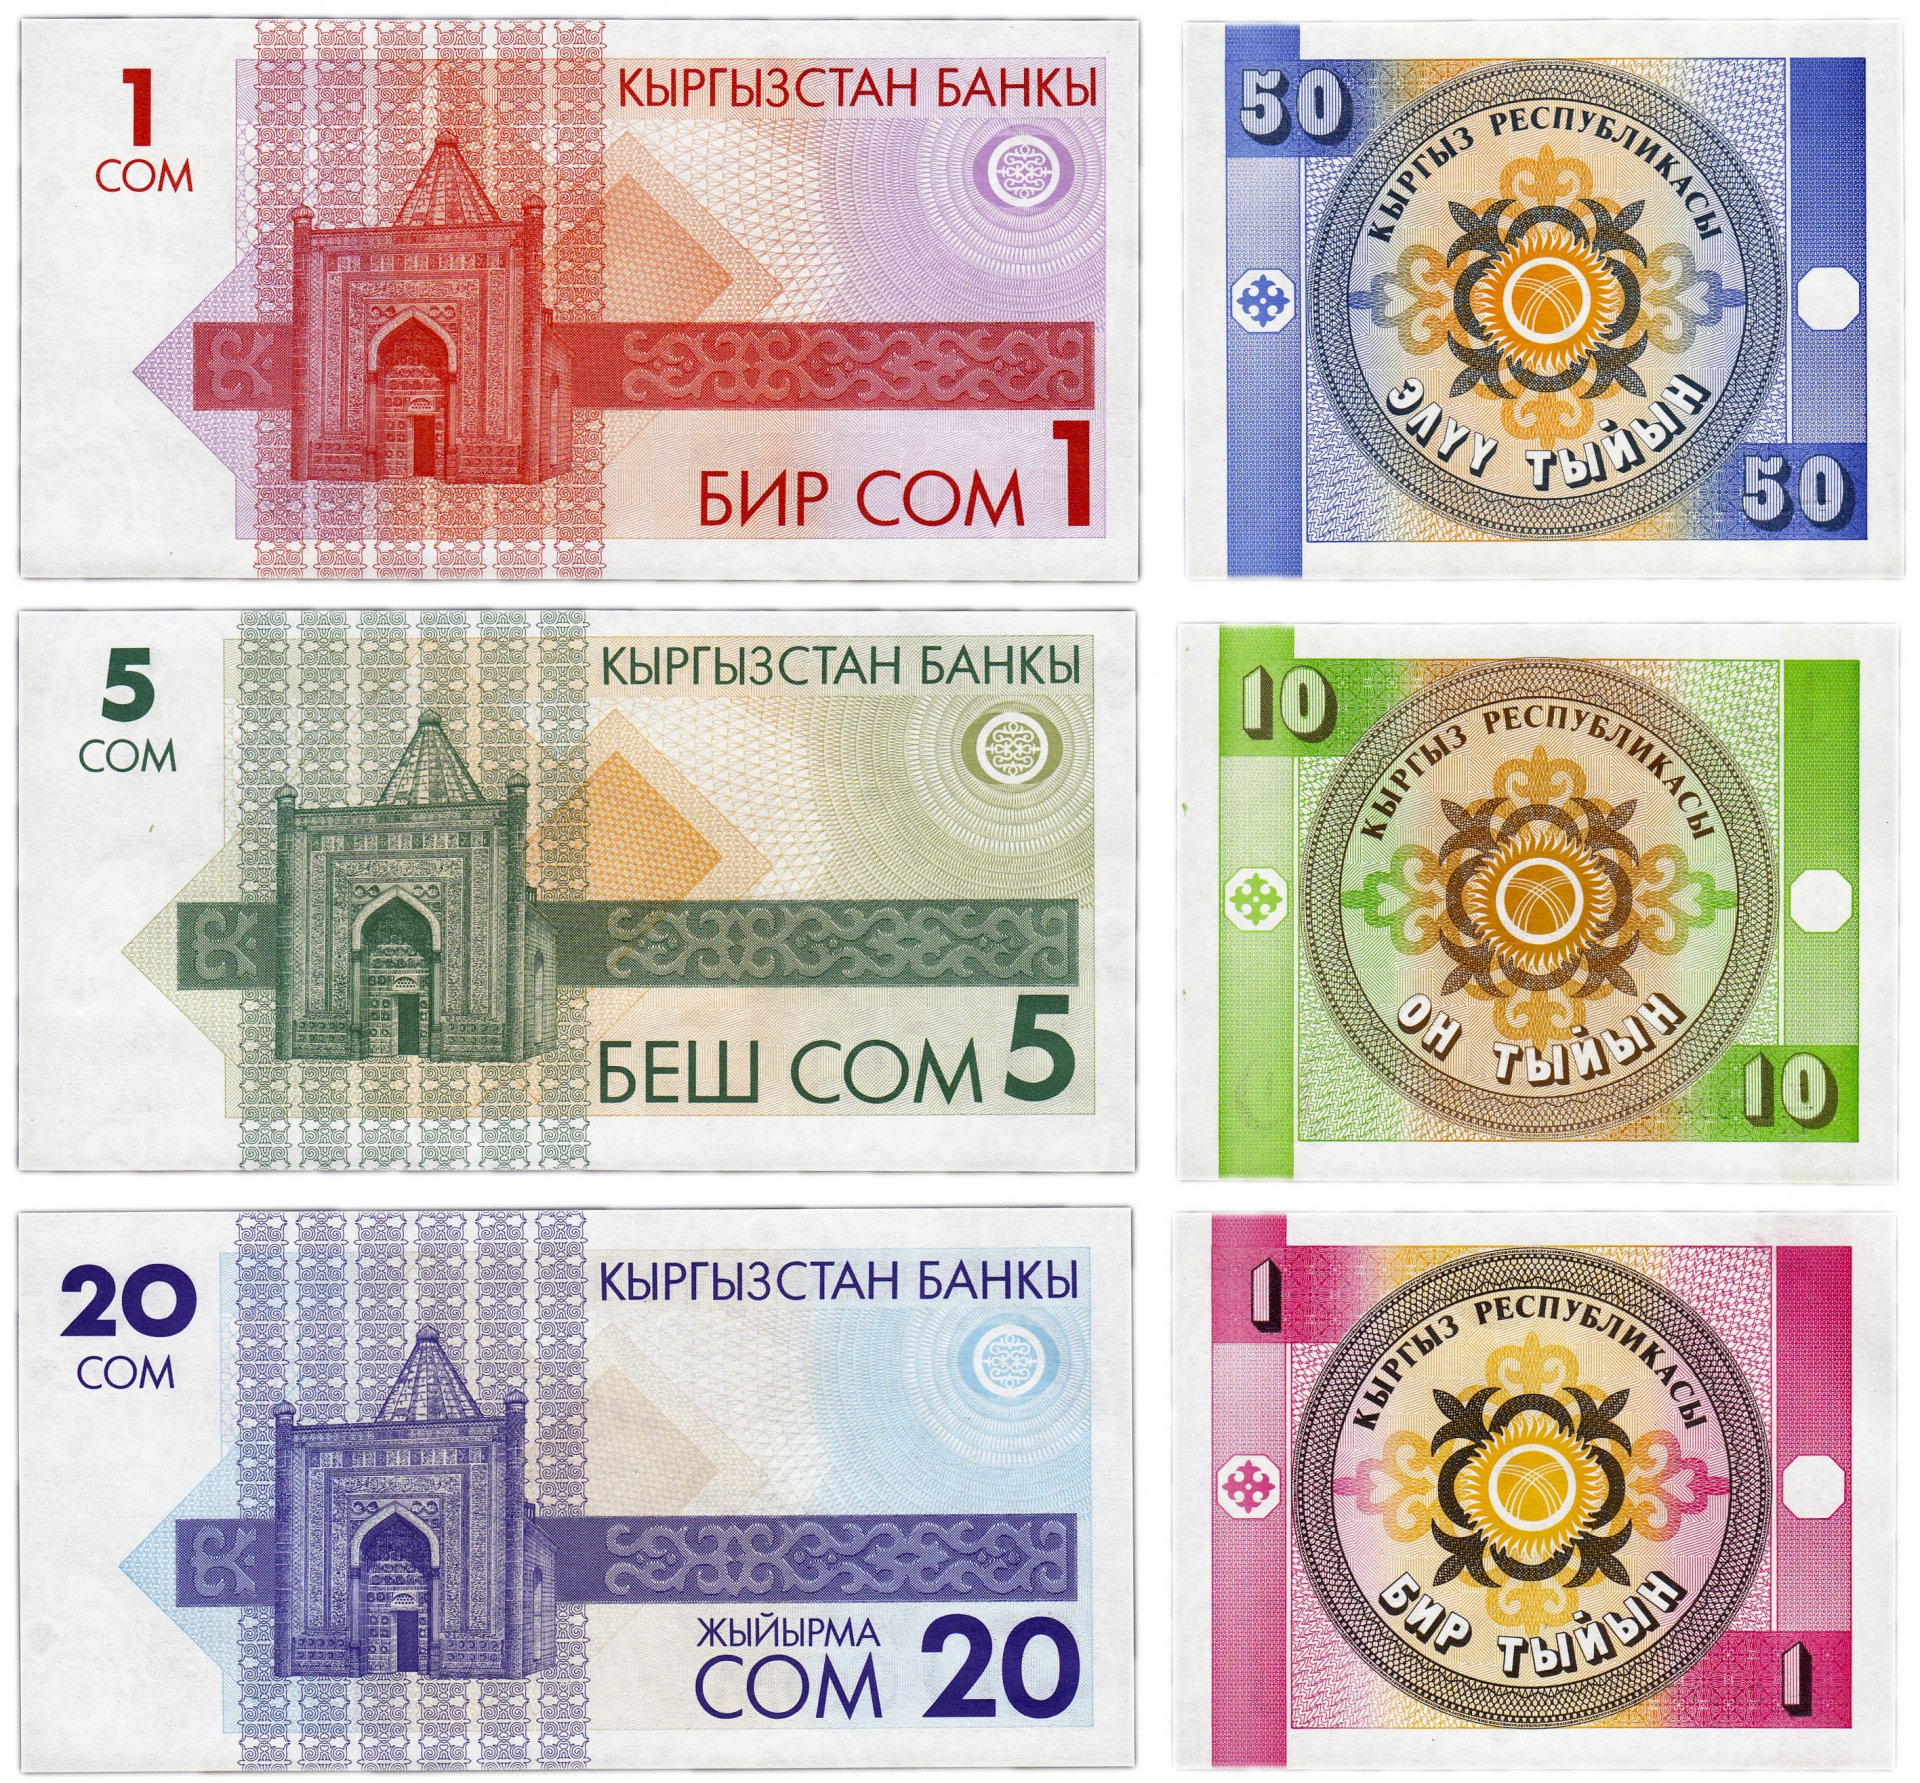 Купюры сом. Банкноты Киргизии 1 тыйын 1993. 50 Сом 50 тыйын. Киргизские сомы банкноты 1993 года. Киргизские сомы банкноты 1993 года 50 сом.